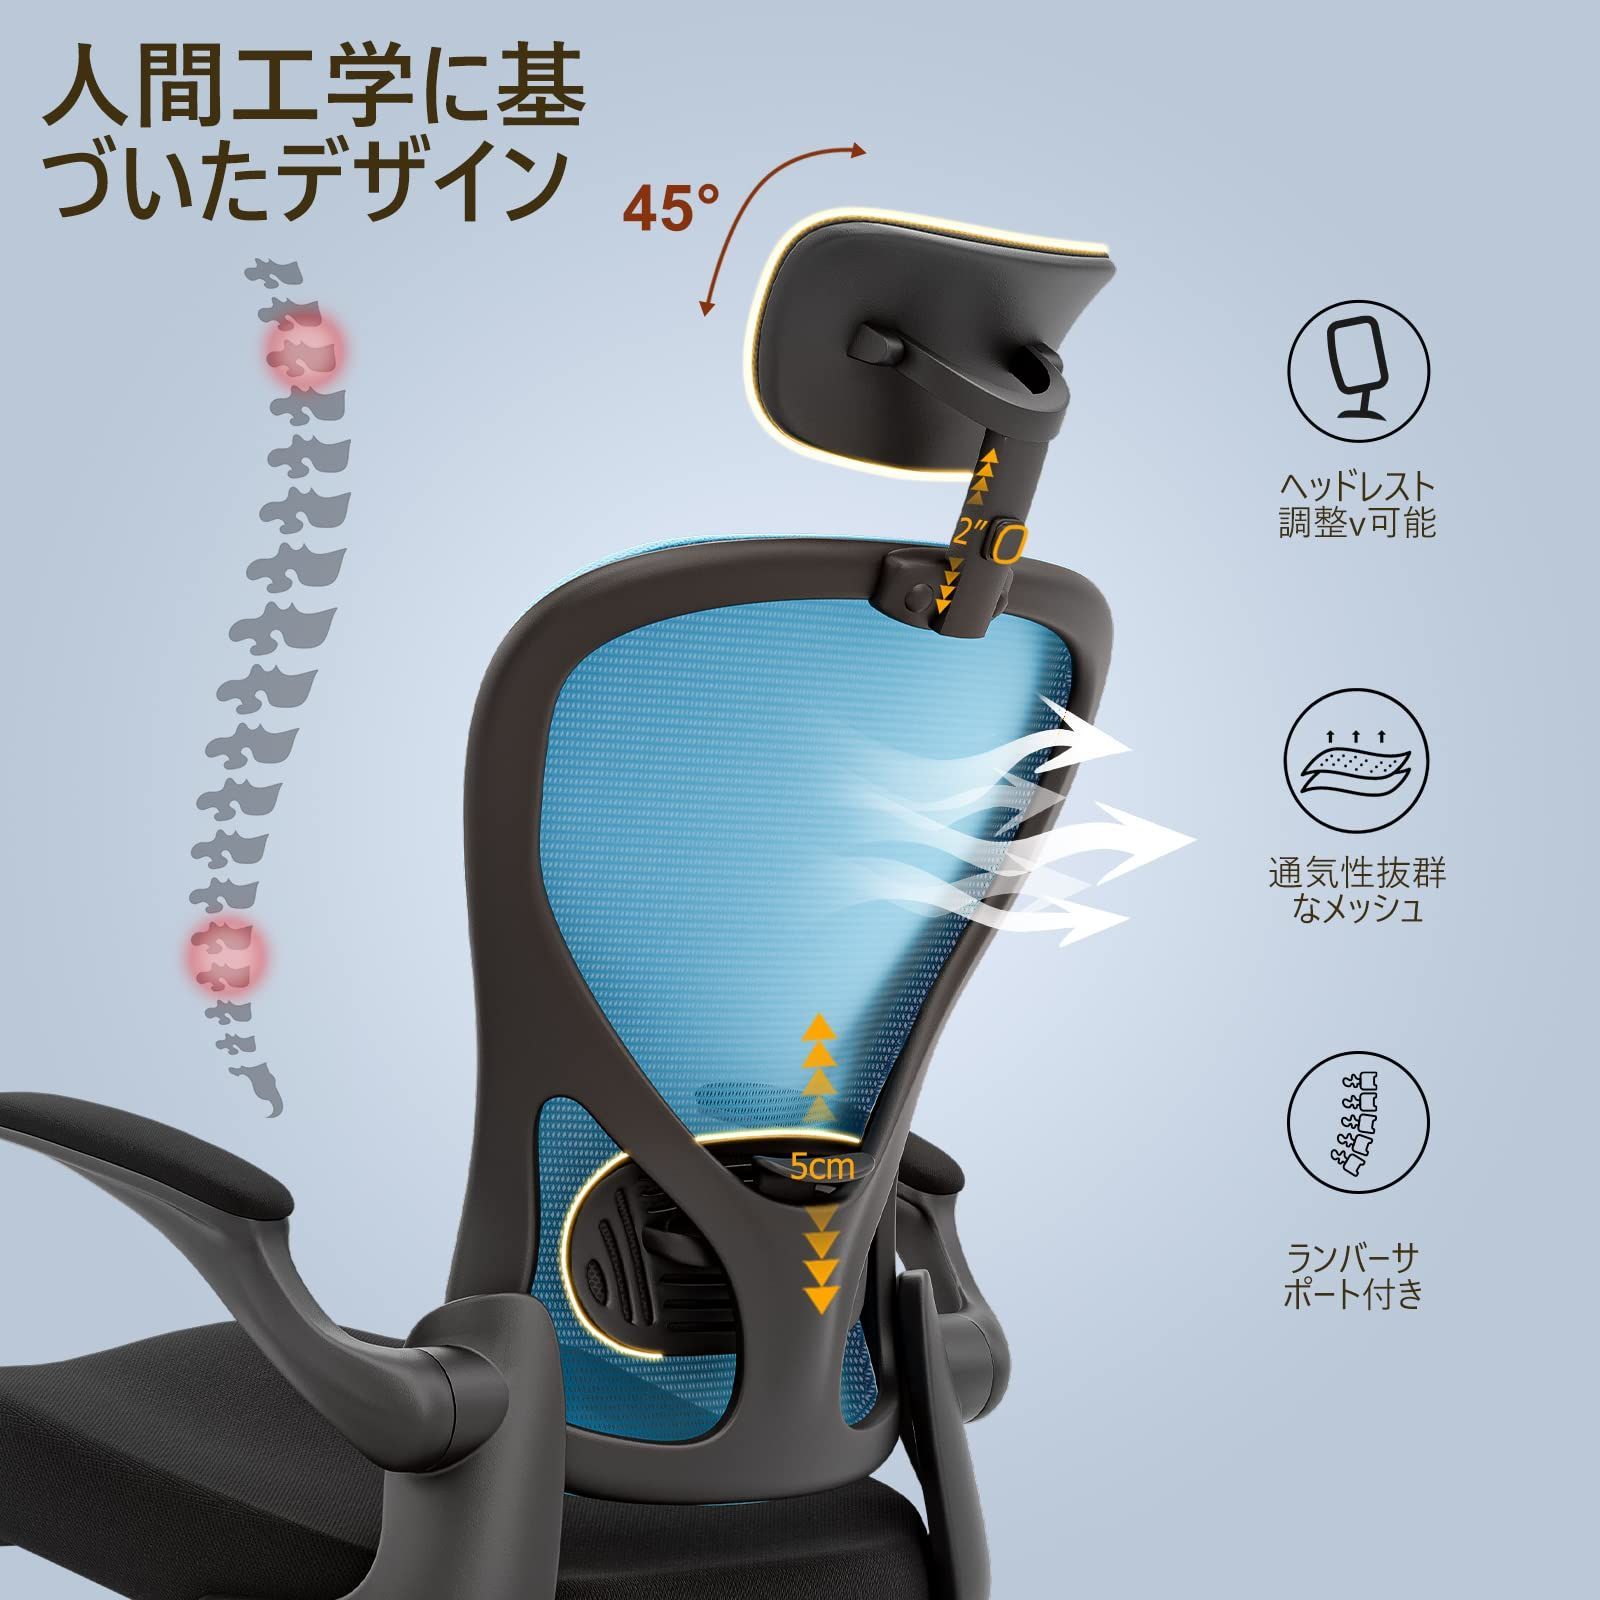 【特価商品】デスクチェア 人間工学 フィスチェア 椅子 360度回転 135度ロッキング 昇降ヘッドレスト Frylr ランバーサポート  可動式アームレスト メッシュ (ブラック)